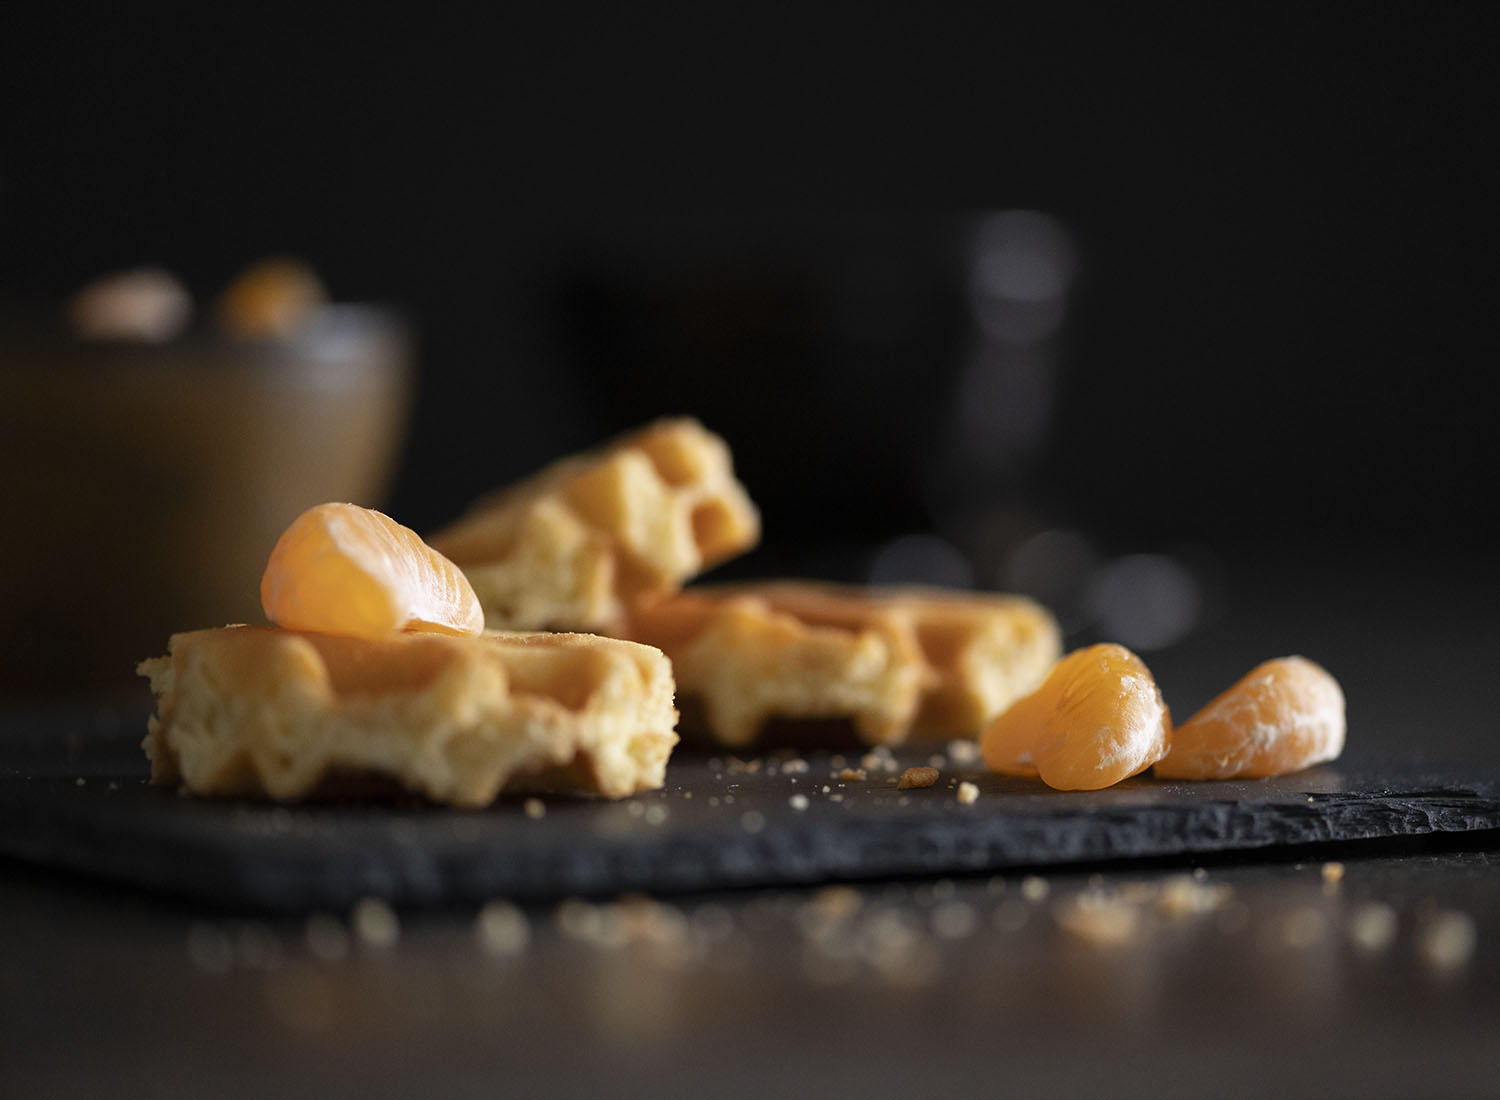 Unsere frisch gebackenen Belgischen Waffeln sind auf einer Kaffeetafel angerichtet. Wir haben eine Nahaufnahme von einer Waffel gemacht und auf sie eine frische Mandarine gelegt.